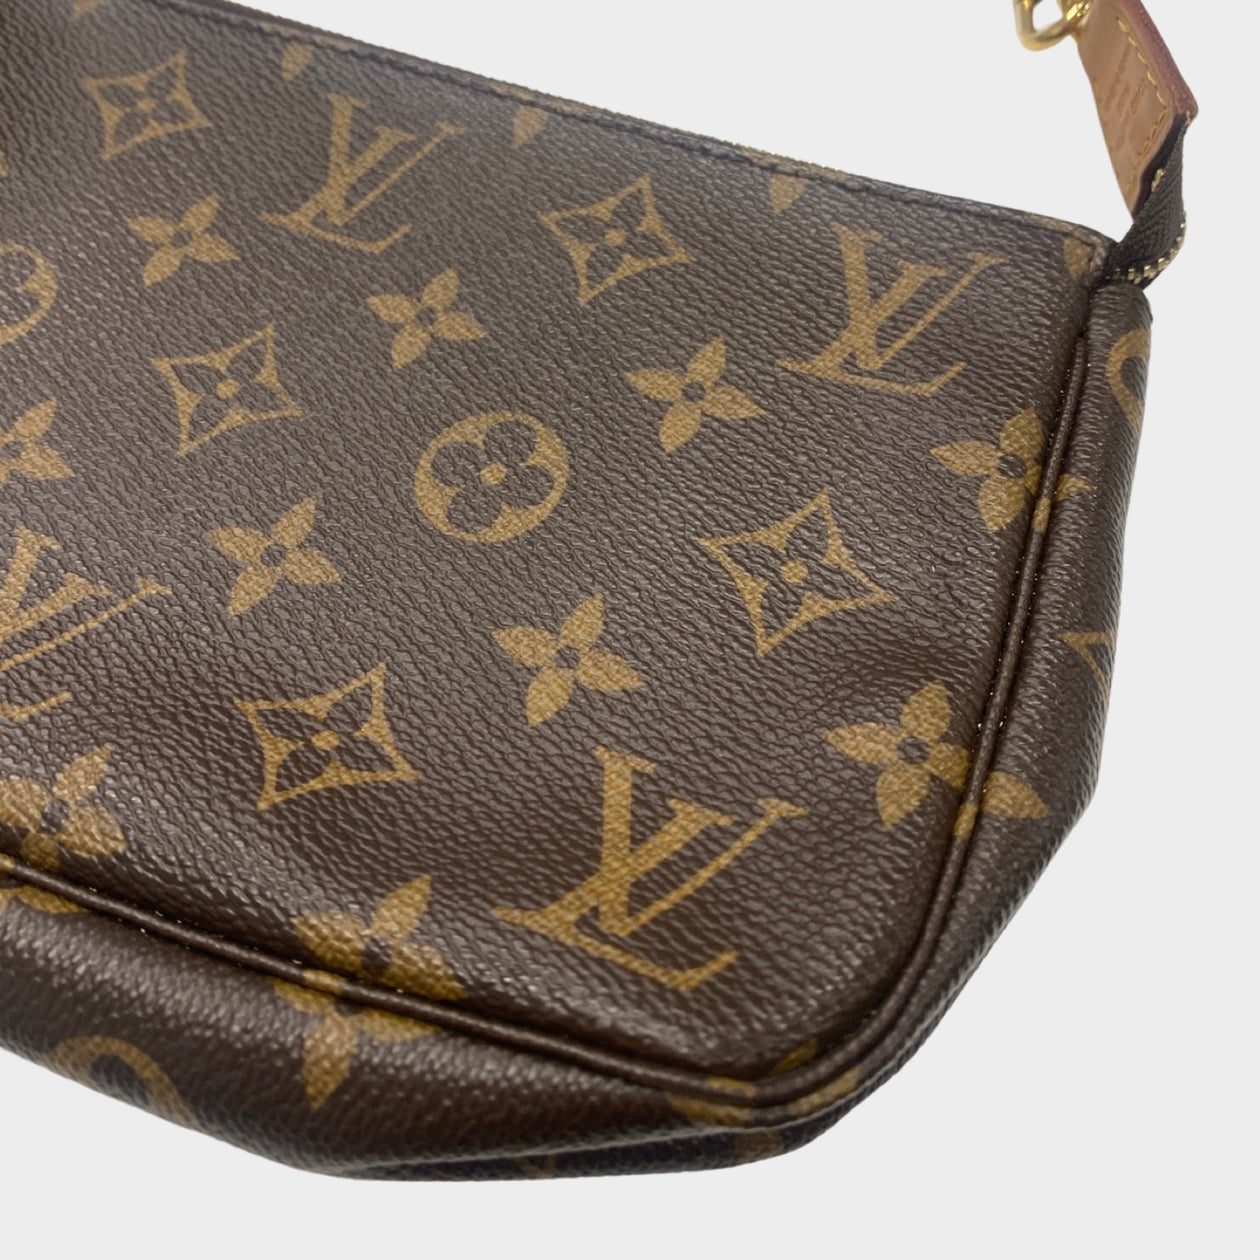 Louis Vuitton Mini e Brown Canvas Shoulder Bag (Pre-Owned